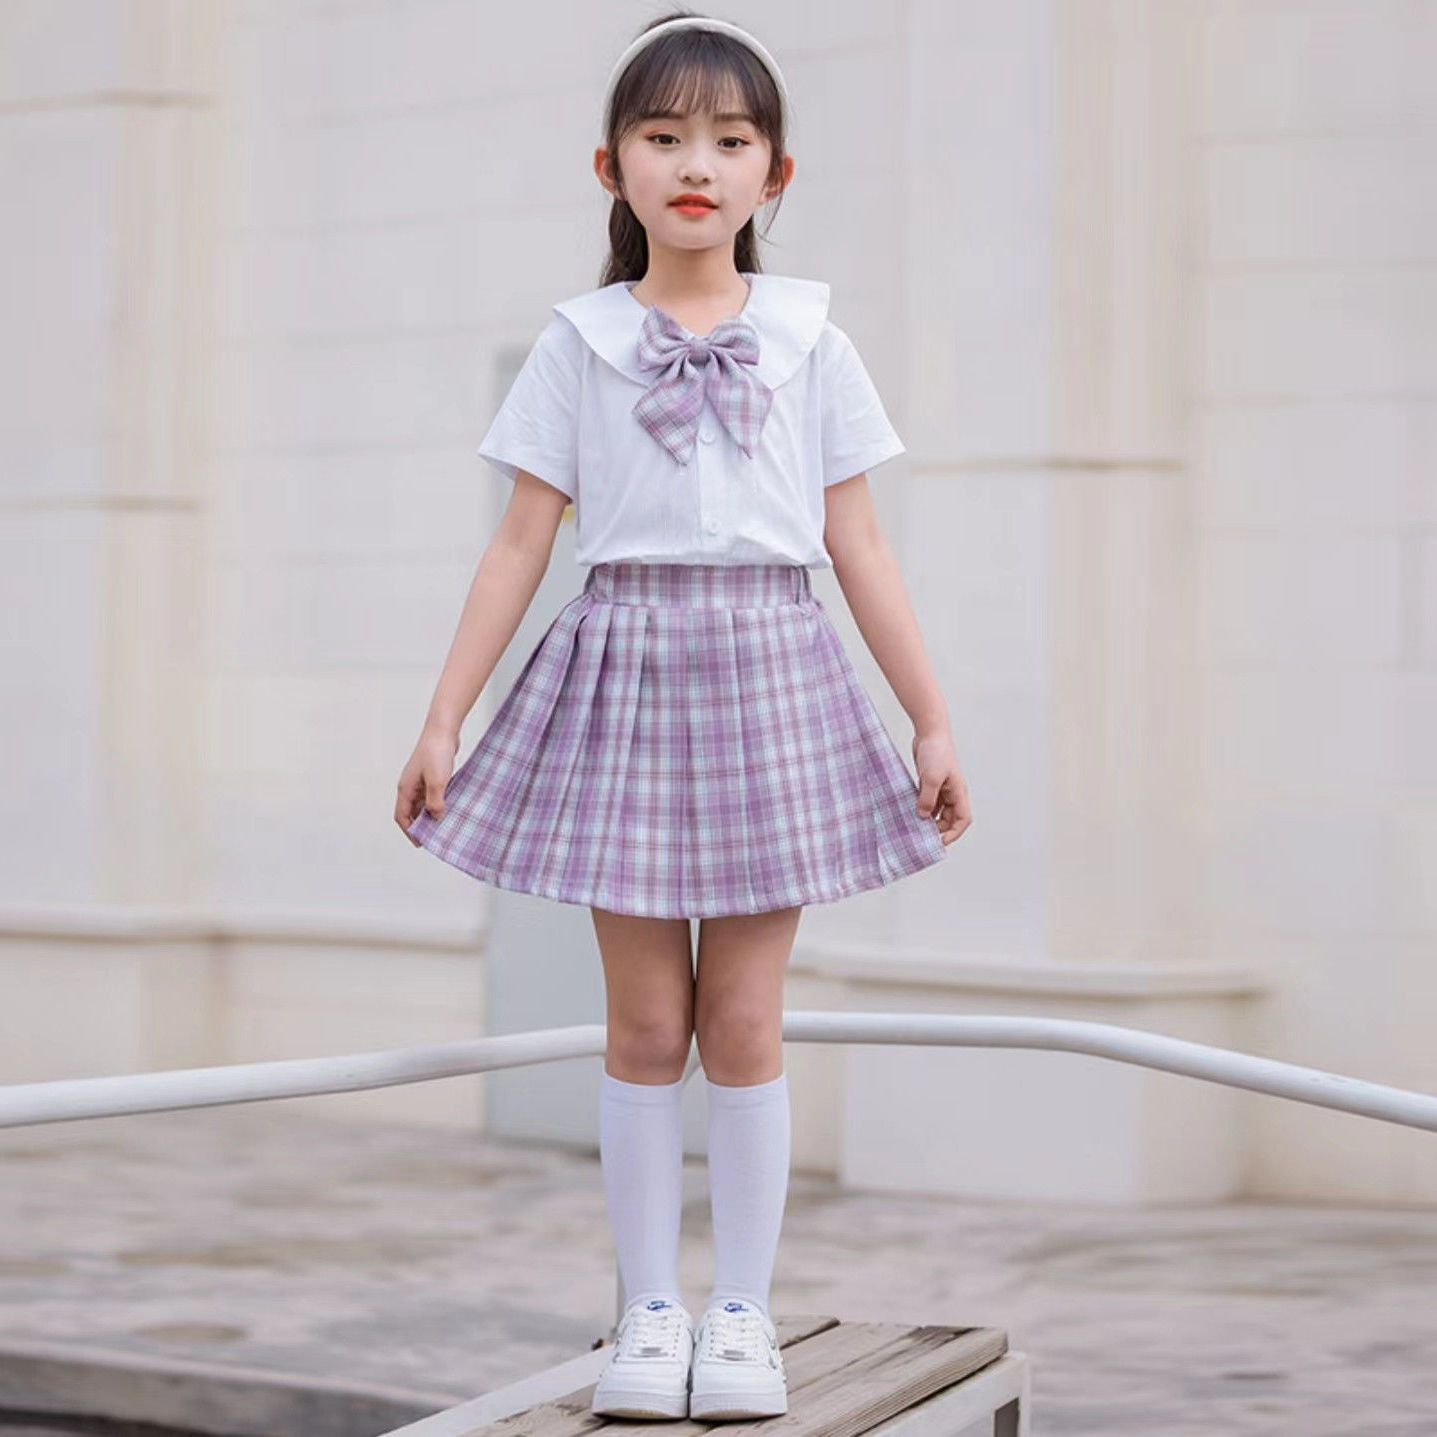 Girls skirt plaid pleated skirt summer suit for children jk uniform short skirt genuine children 5 years old college style 6